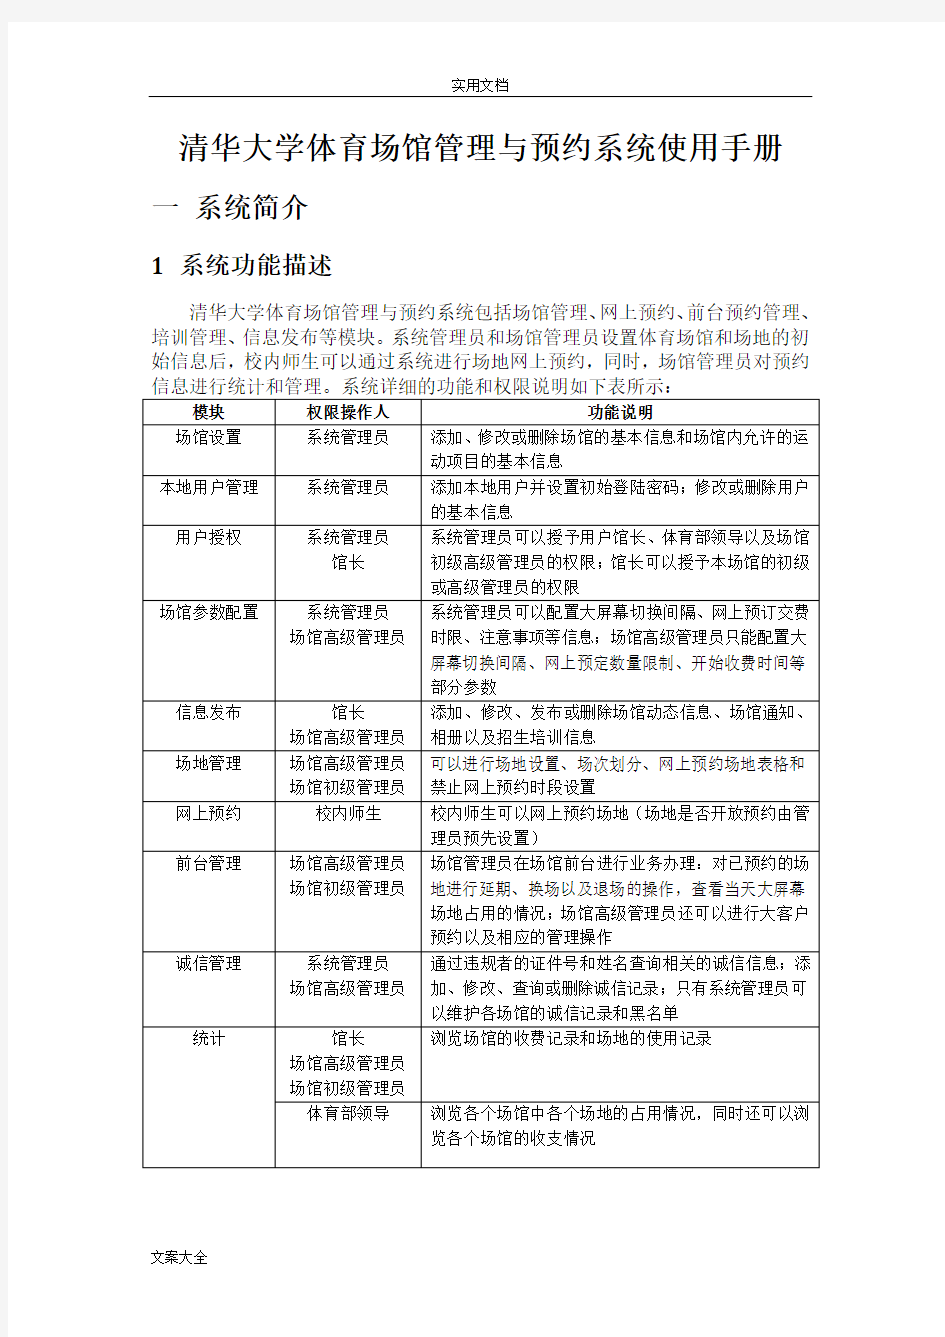 清华大学体育馆管理系统与网上预约系统-使用手册簿